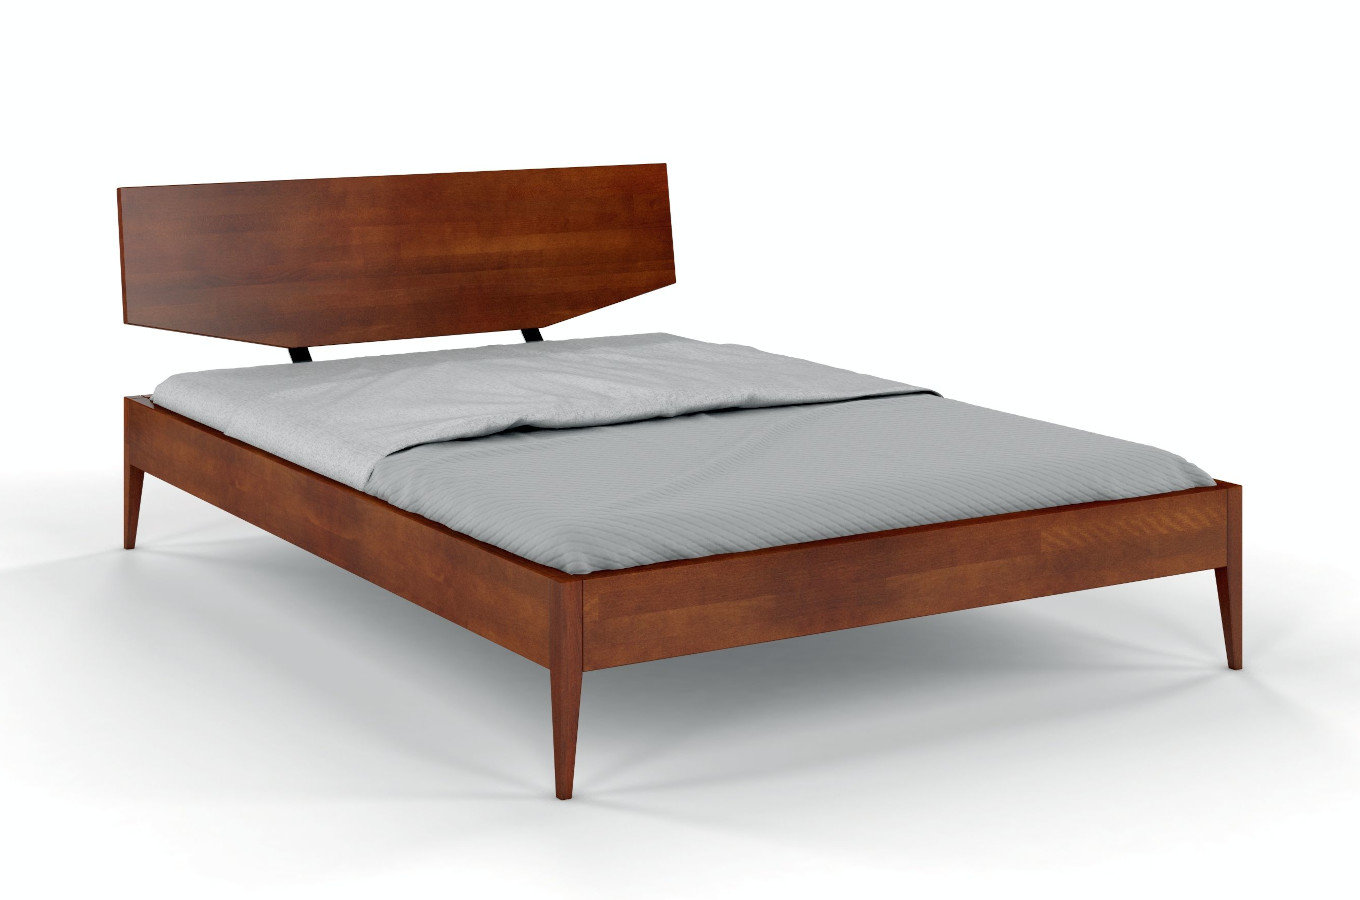 Dřevěná buková postel Skandica SUND / 140x200 cm, barva ořech